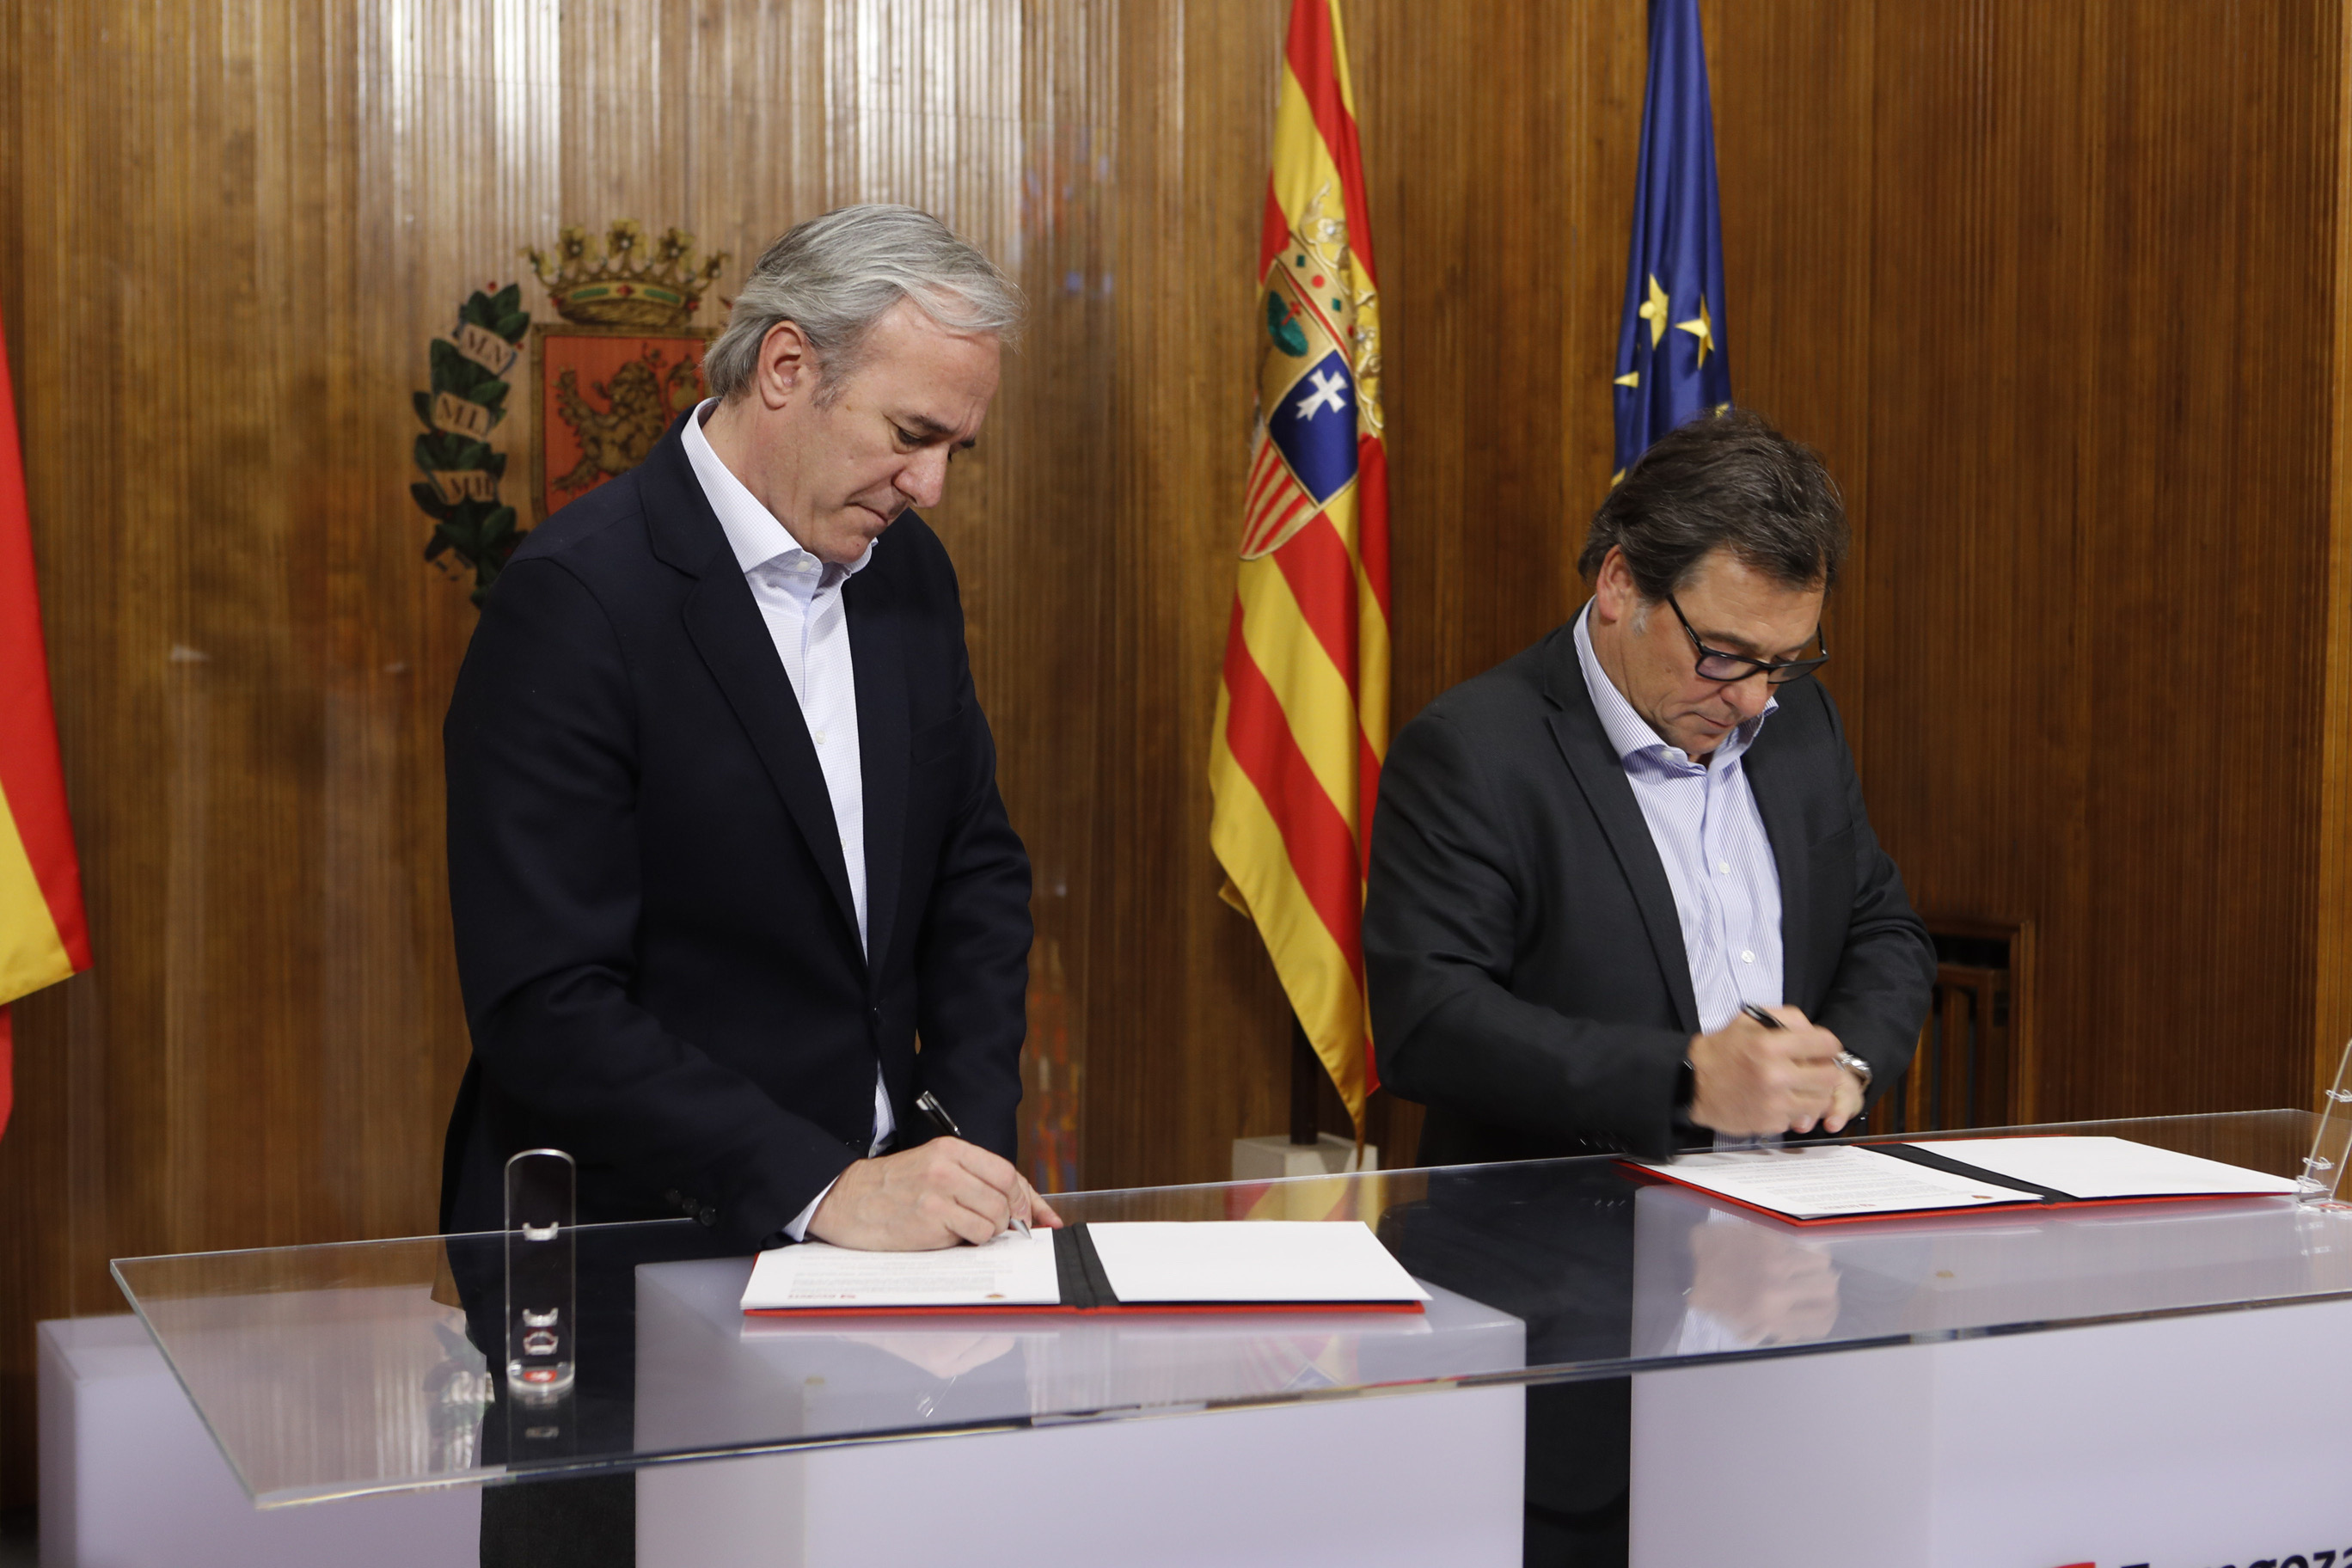 El Ayuntamiento renueva el patrocinio de 700.000 euros con el Real Zaragoza  para el fútbol base